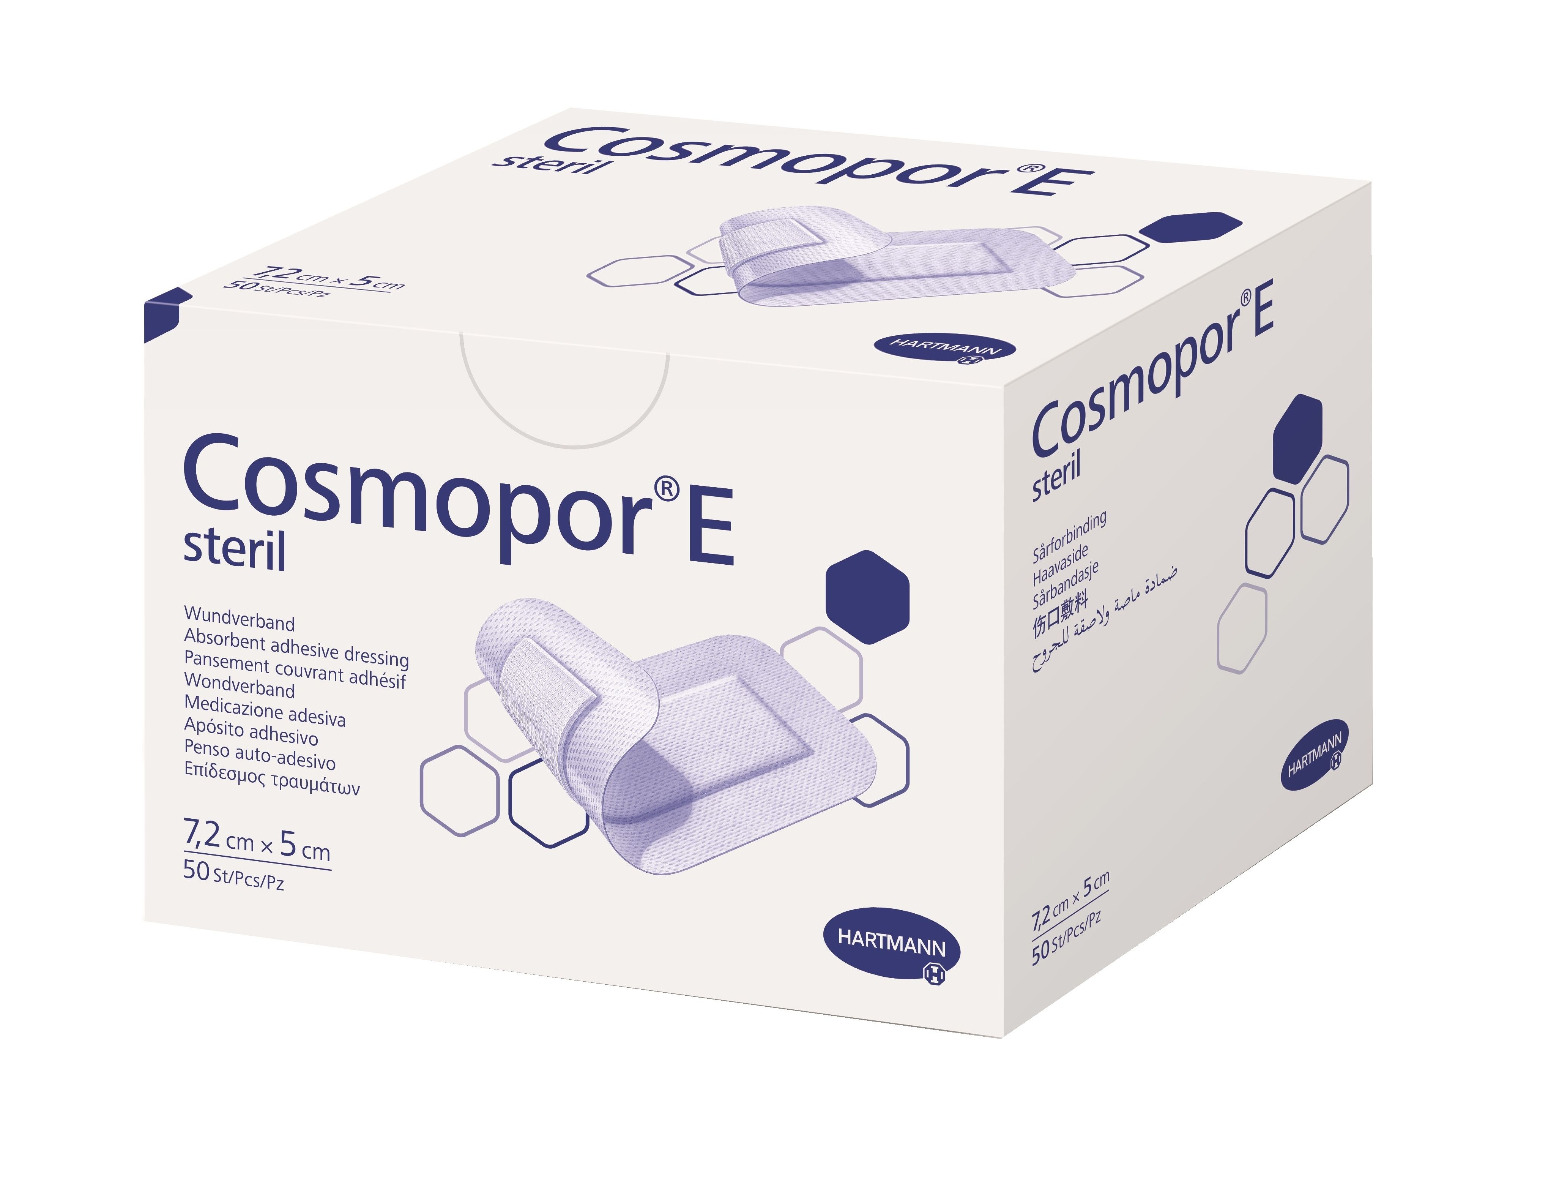 Cosmopor E Steril 7